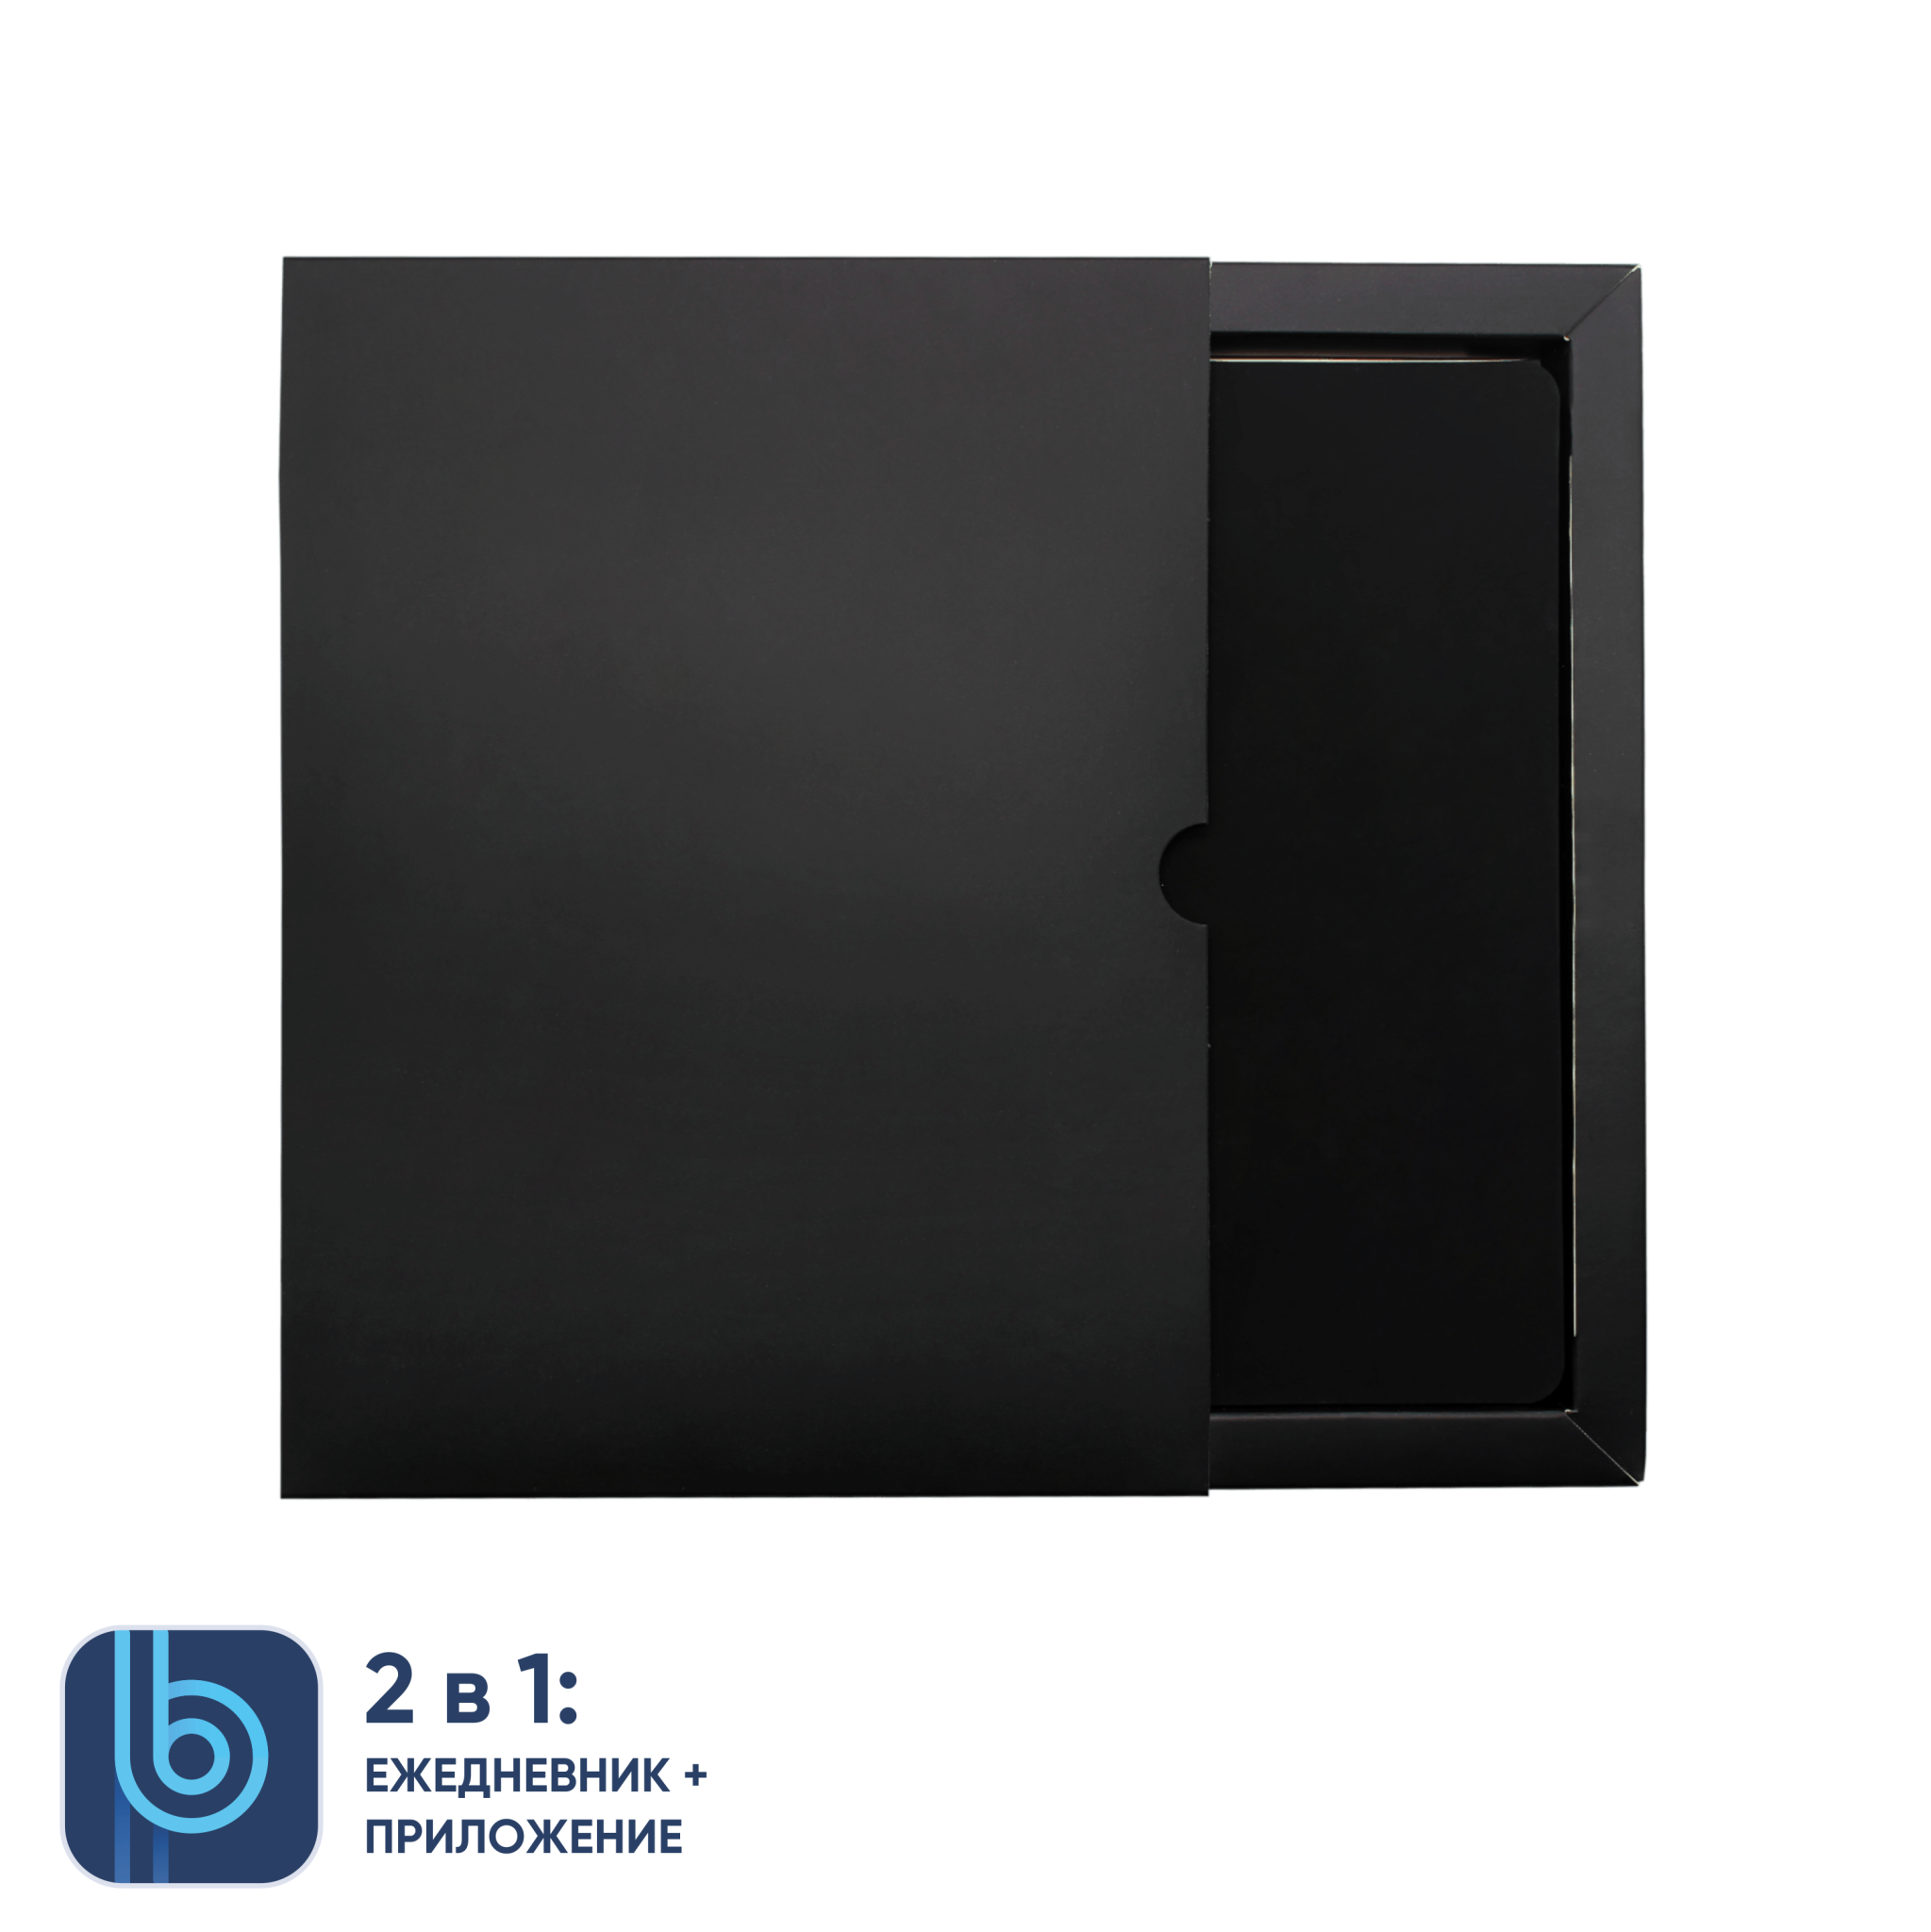 Ежедневник Bplanner.01 в подарочной коробке (черный), черный, картон